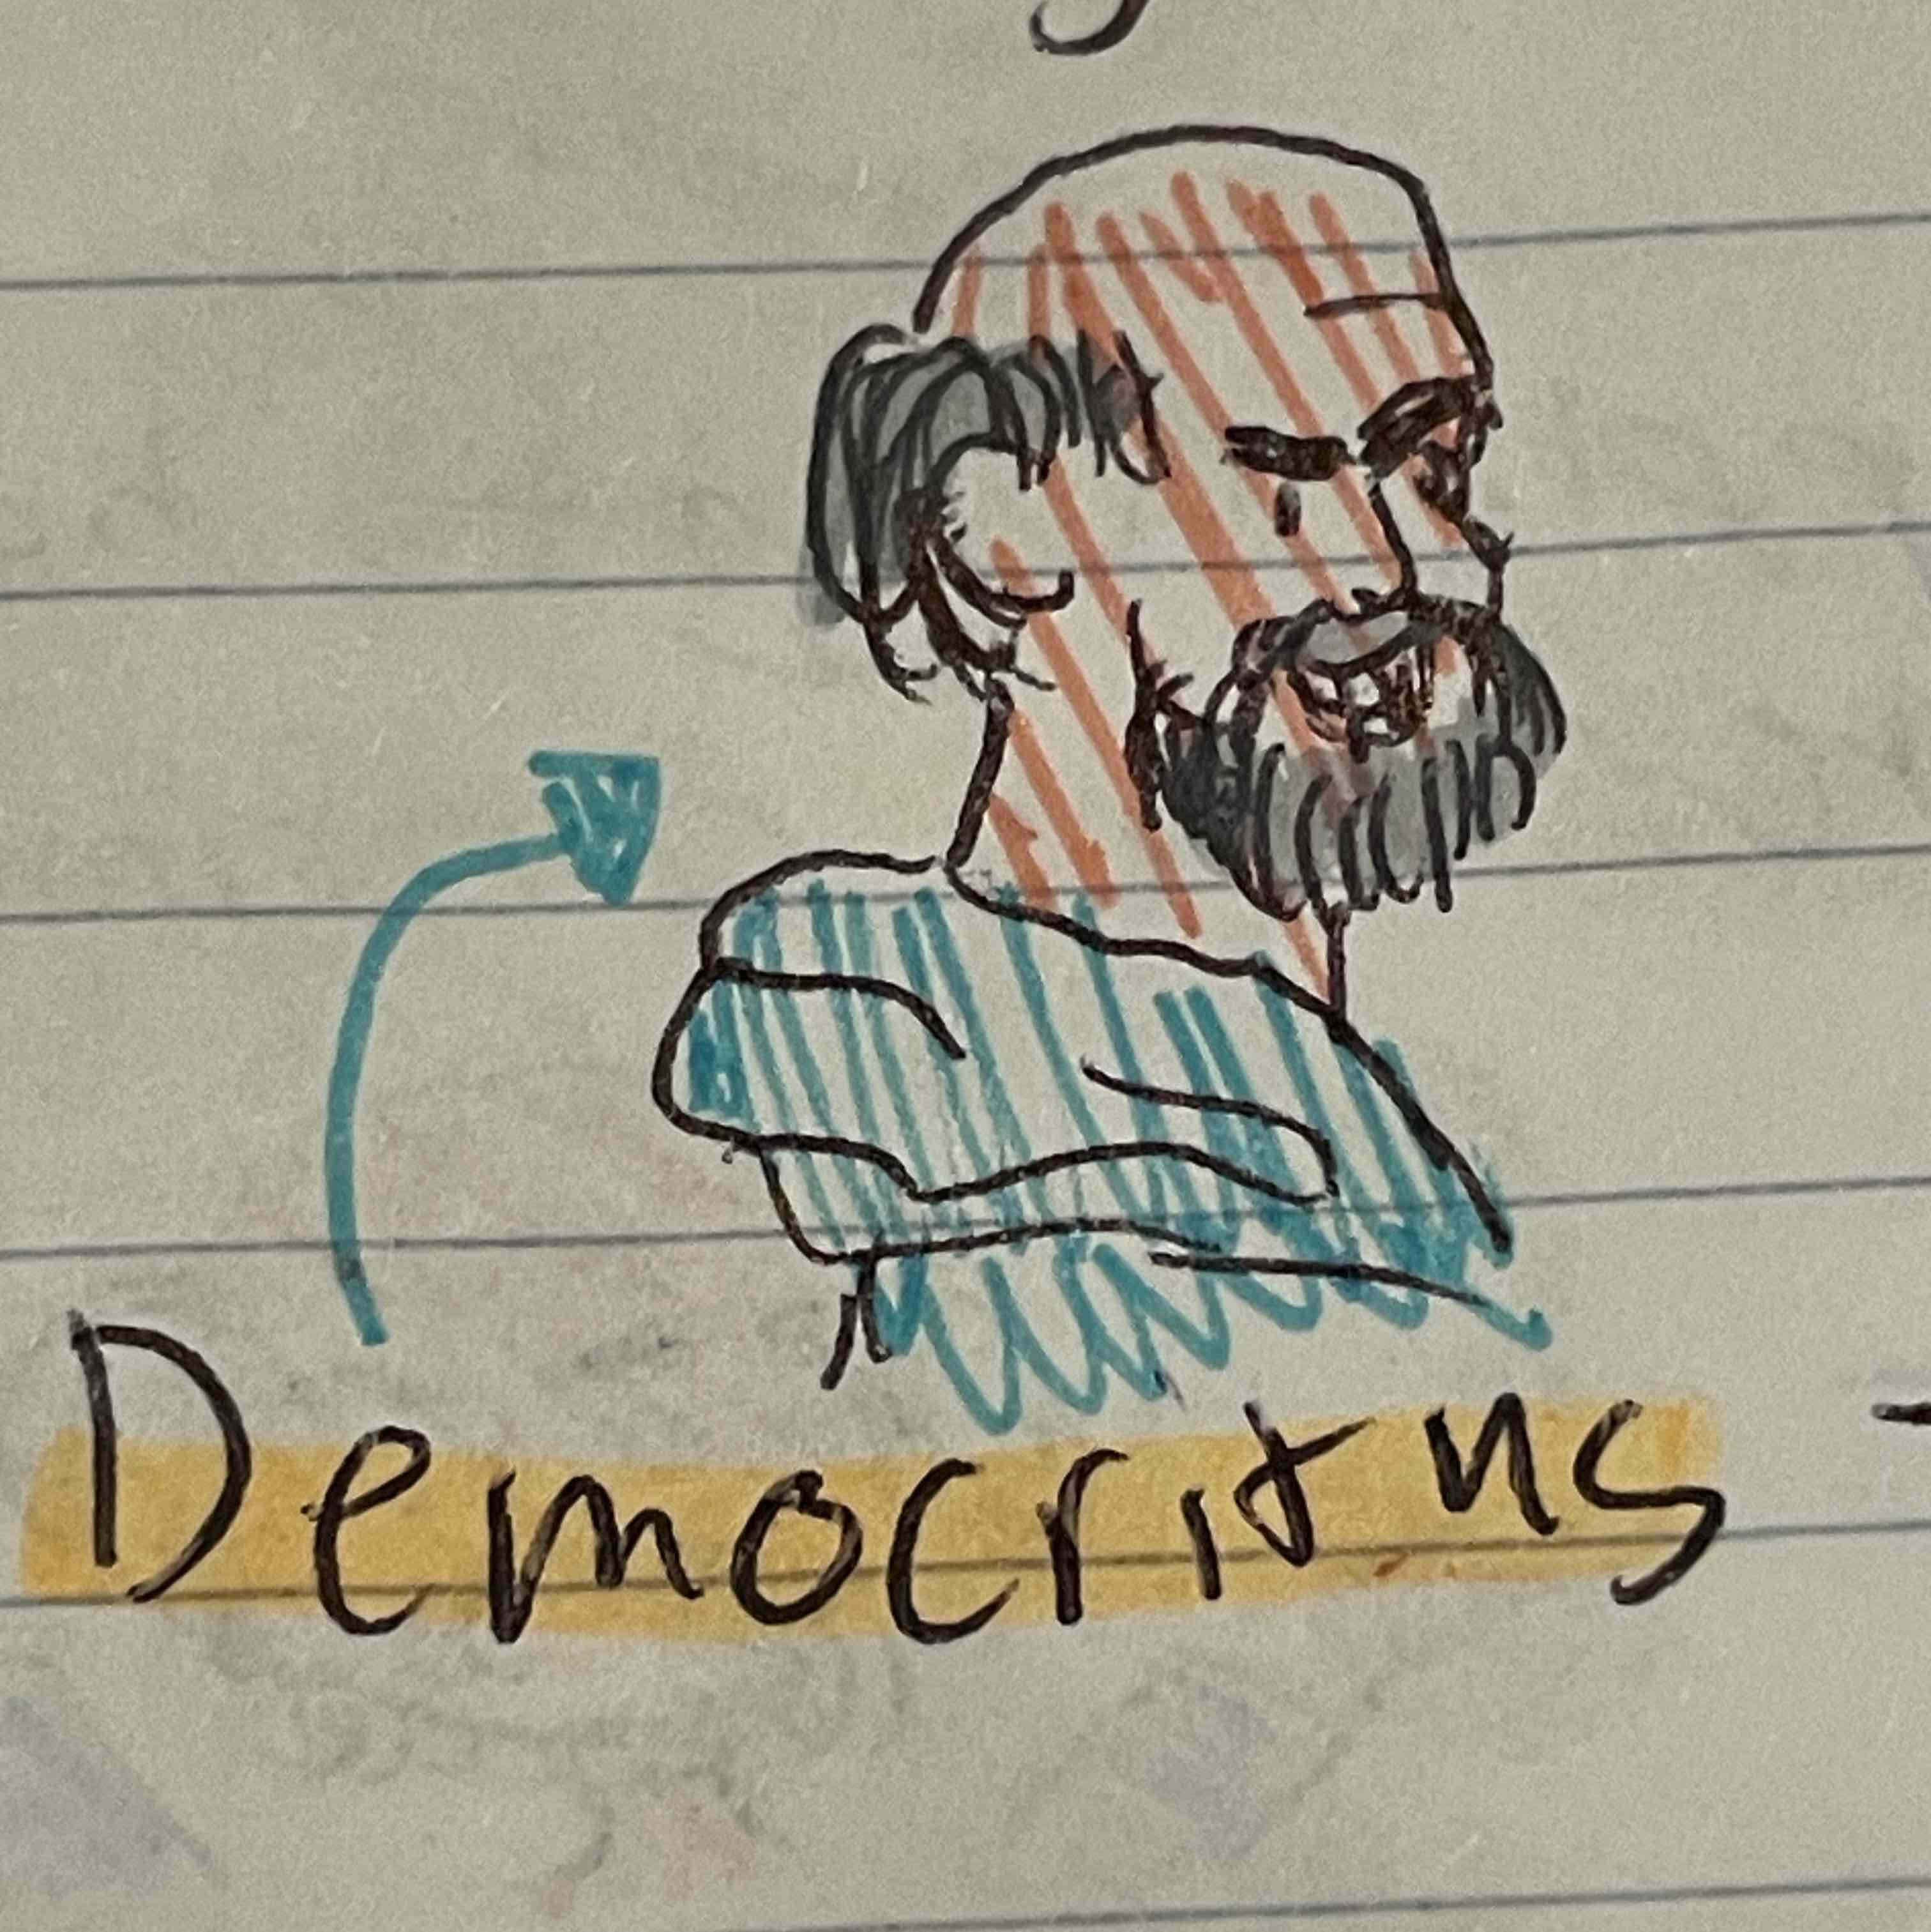 <p>Democritus</p>